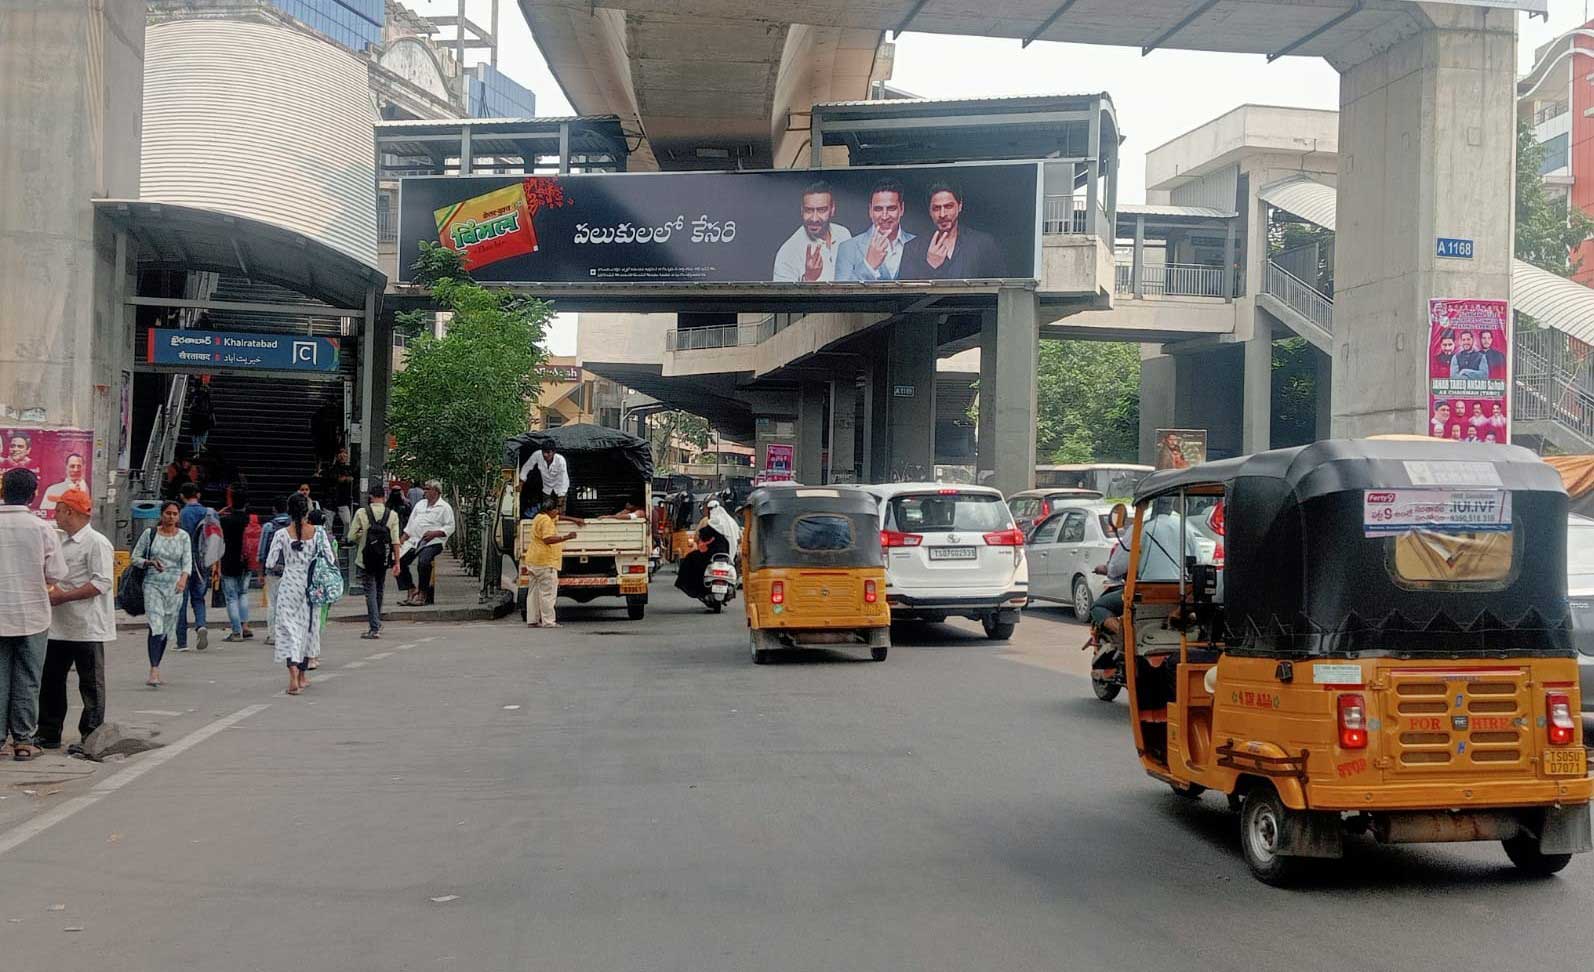 Vimal pan masala campaign - Banglore Metro